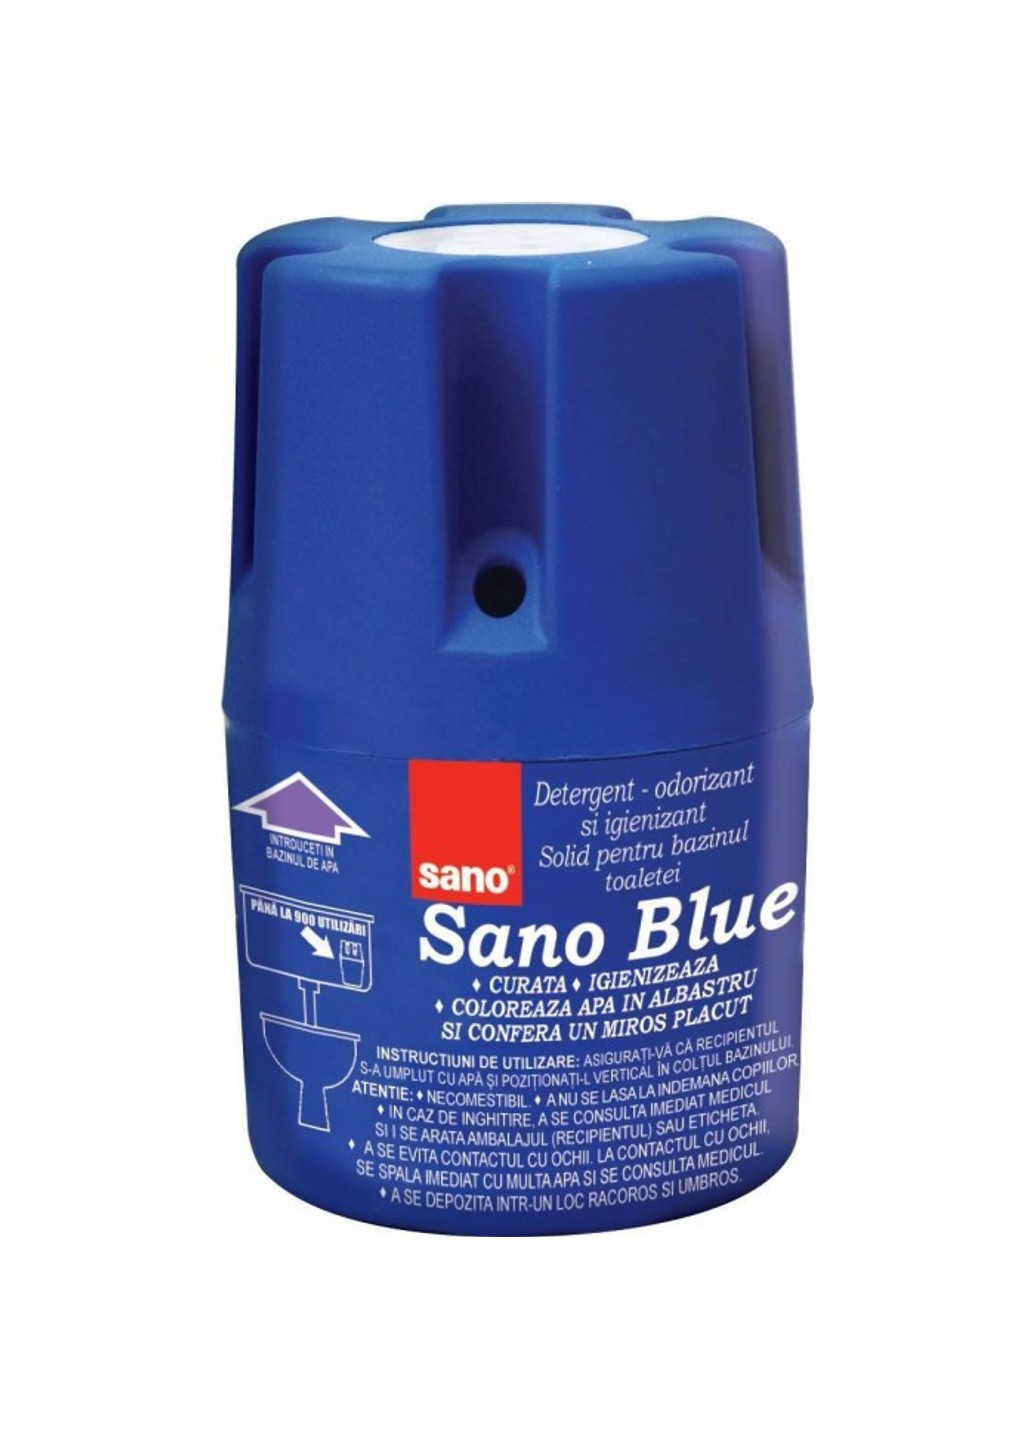 Засіб для унітазу Blue, 150 г Sano (272790450)